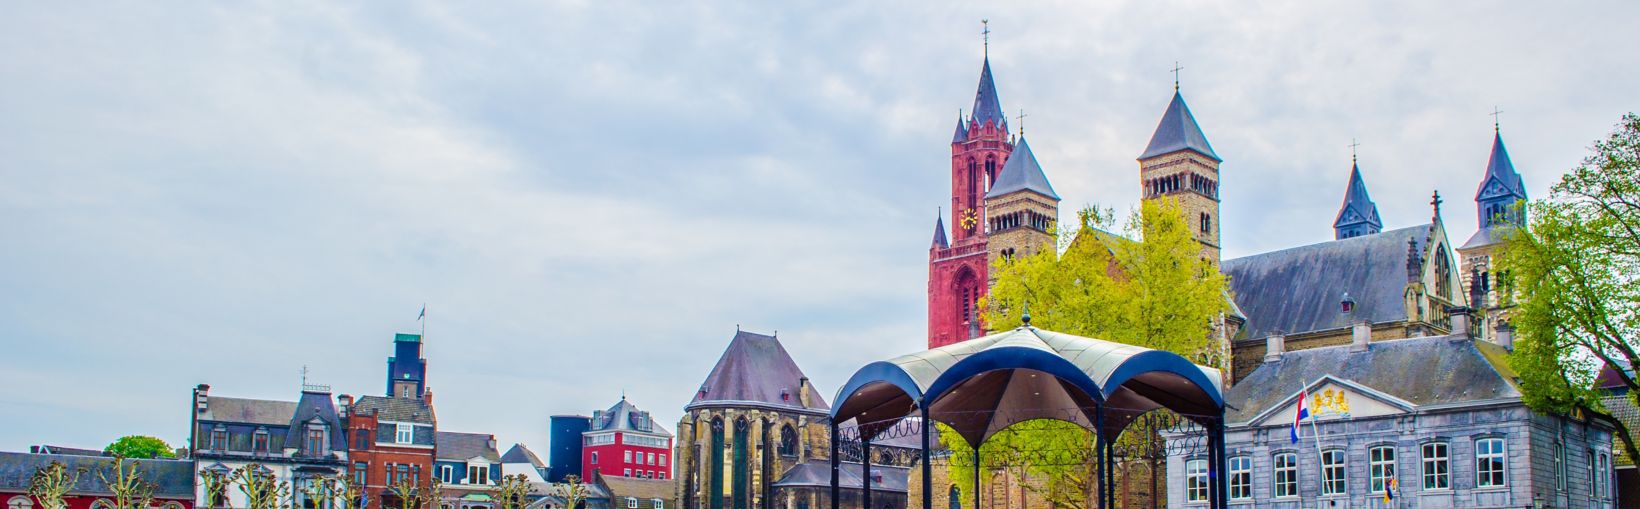 MAASTRICHT, PAÍSES BAJOS, 12 DE ABRIL DE 2014: Vista sobre vrijthof - histórico del centro de Maastricht.